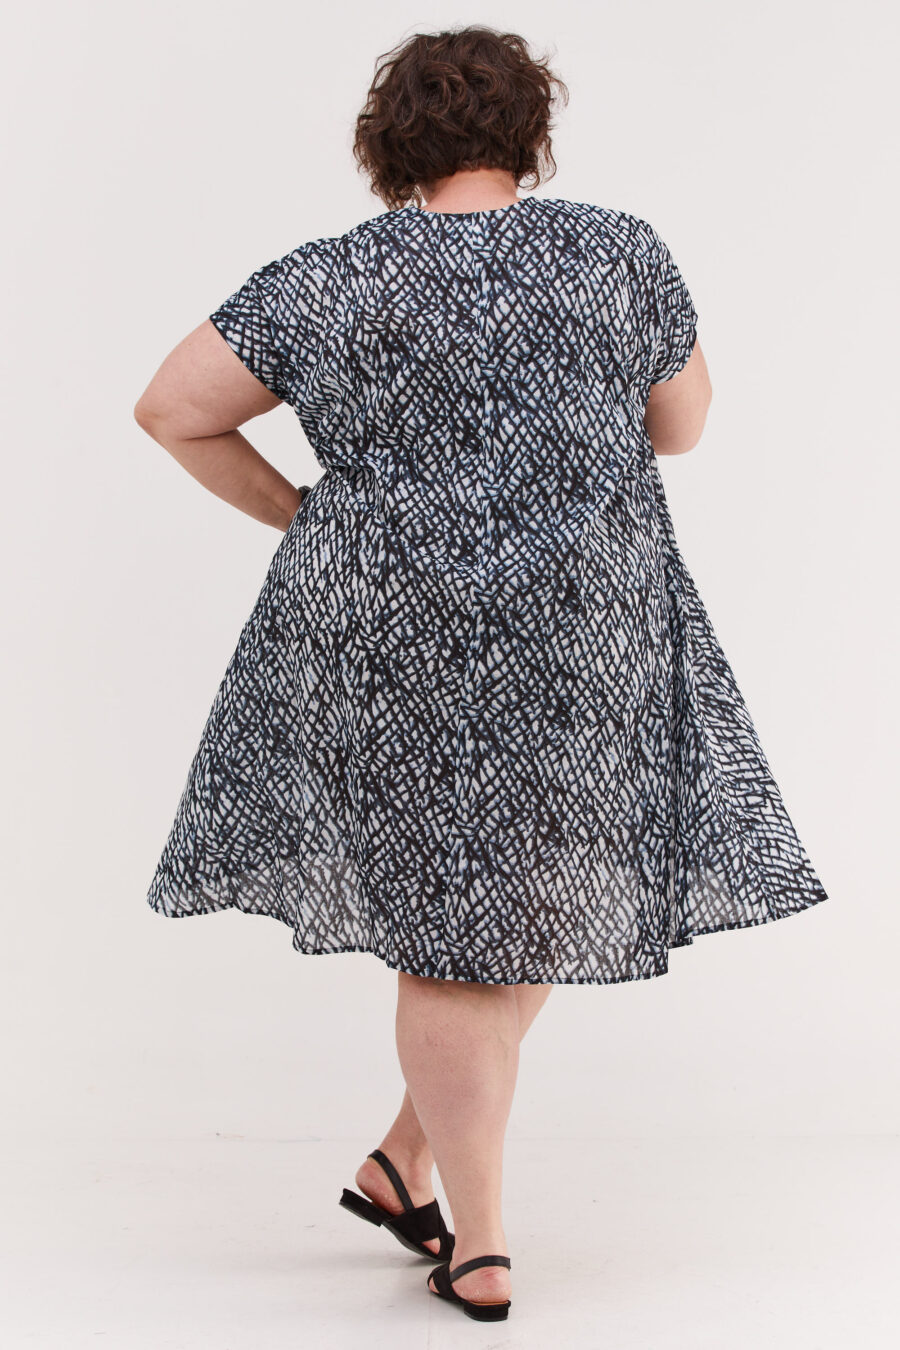 שמלת ג'וז | שמלת אוברסייז באורך מידי בעיצוב ייחודי - הדפס בלאק קראש, שמלה בצבע לבן עם הדפס דמוי רשת בגוונים שחור ותכלת